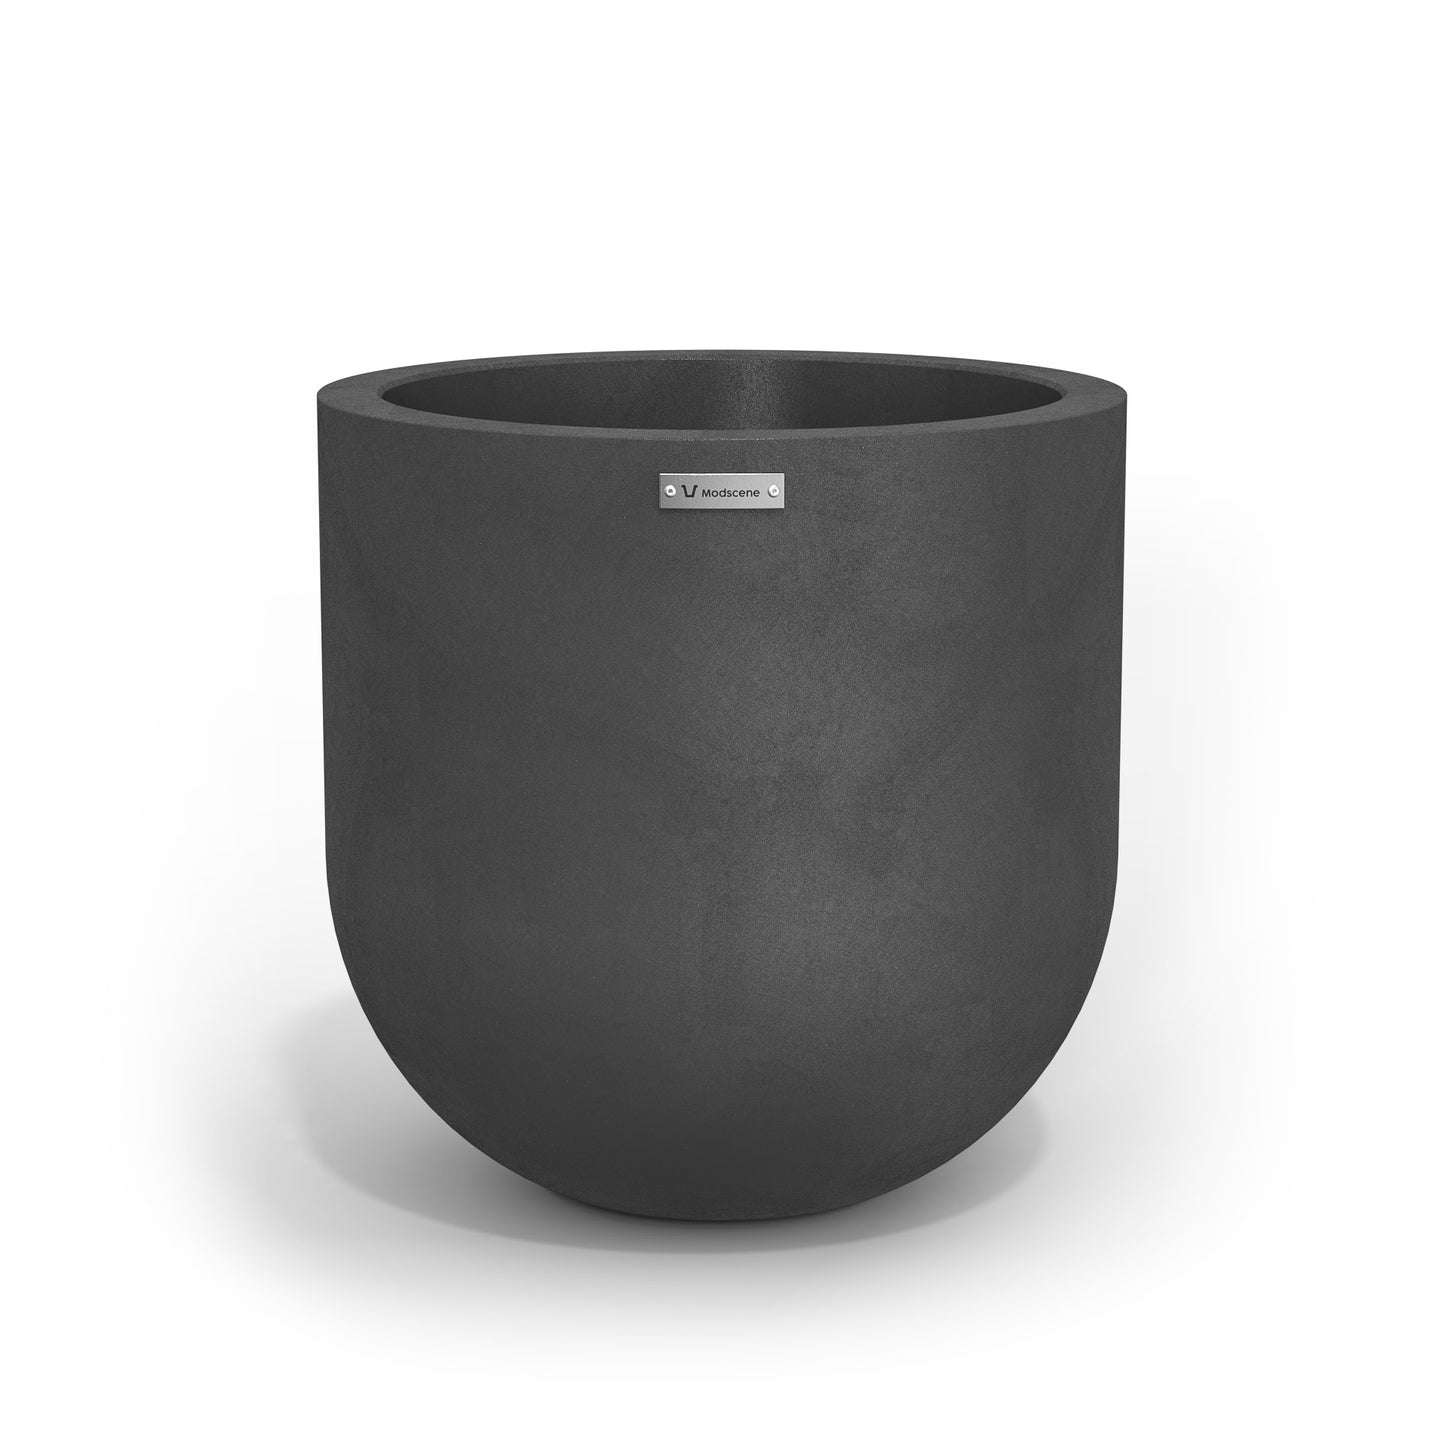 Medium Modscene planter pot in a dark grey colour with a concrete finish.